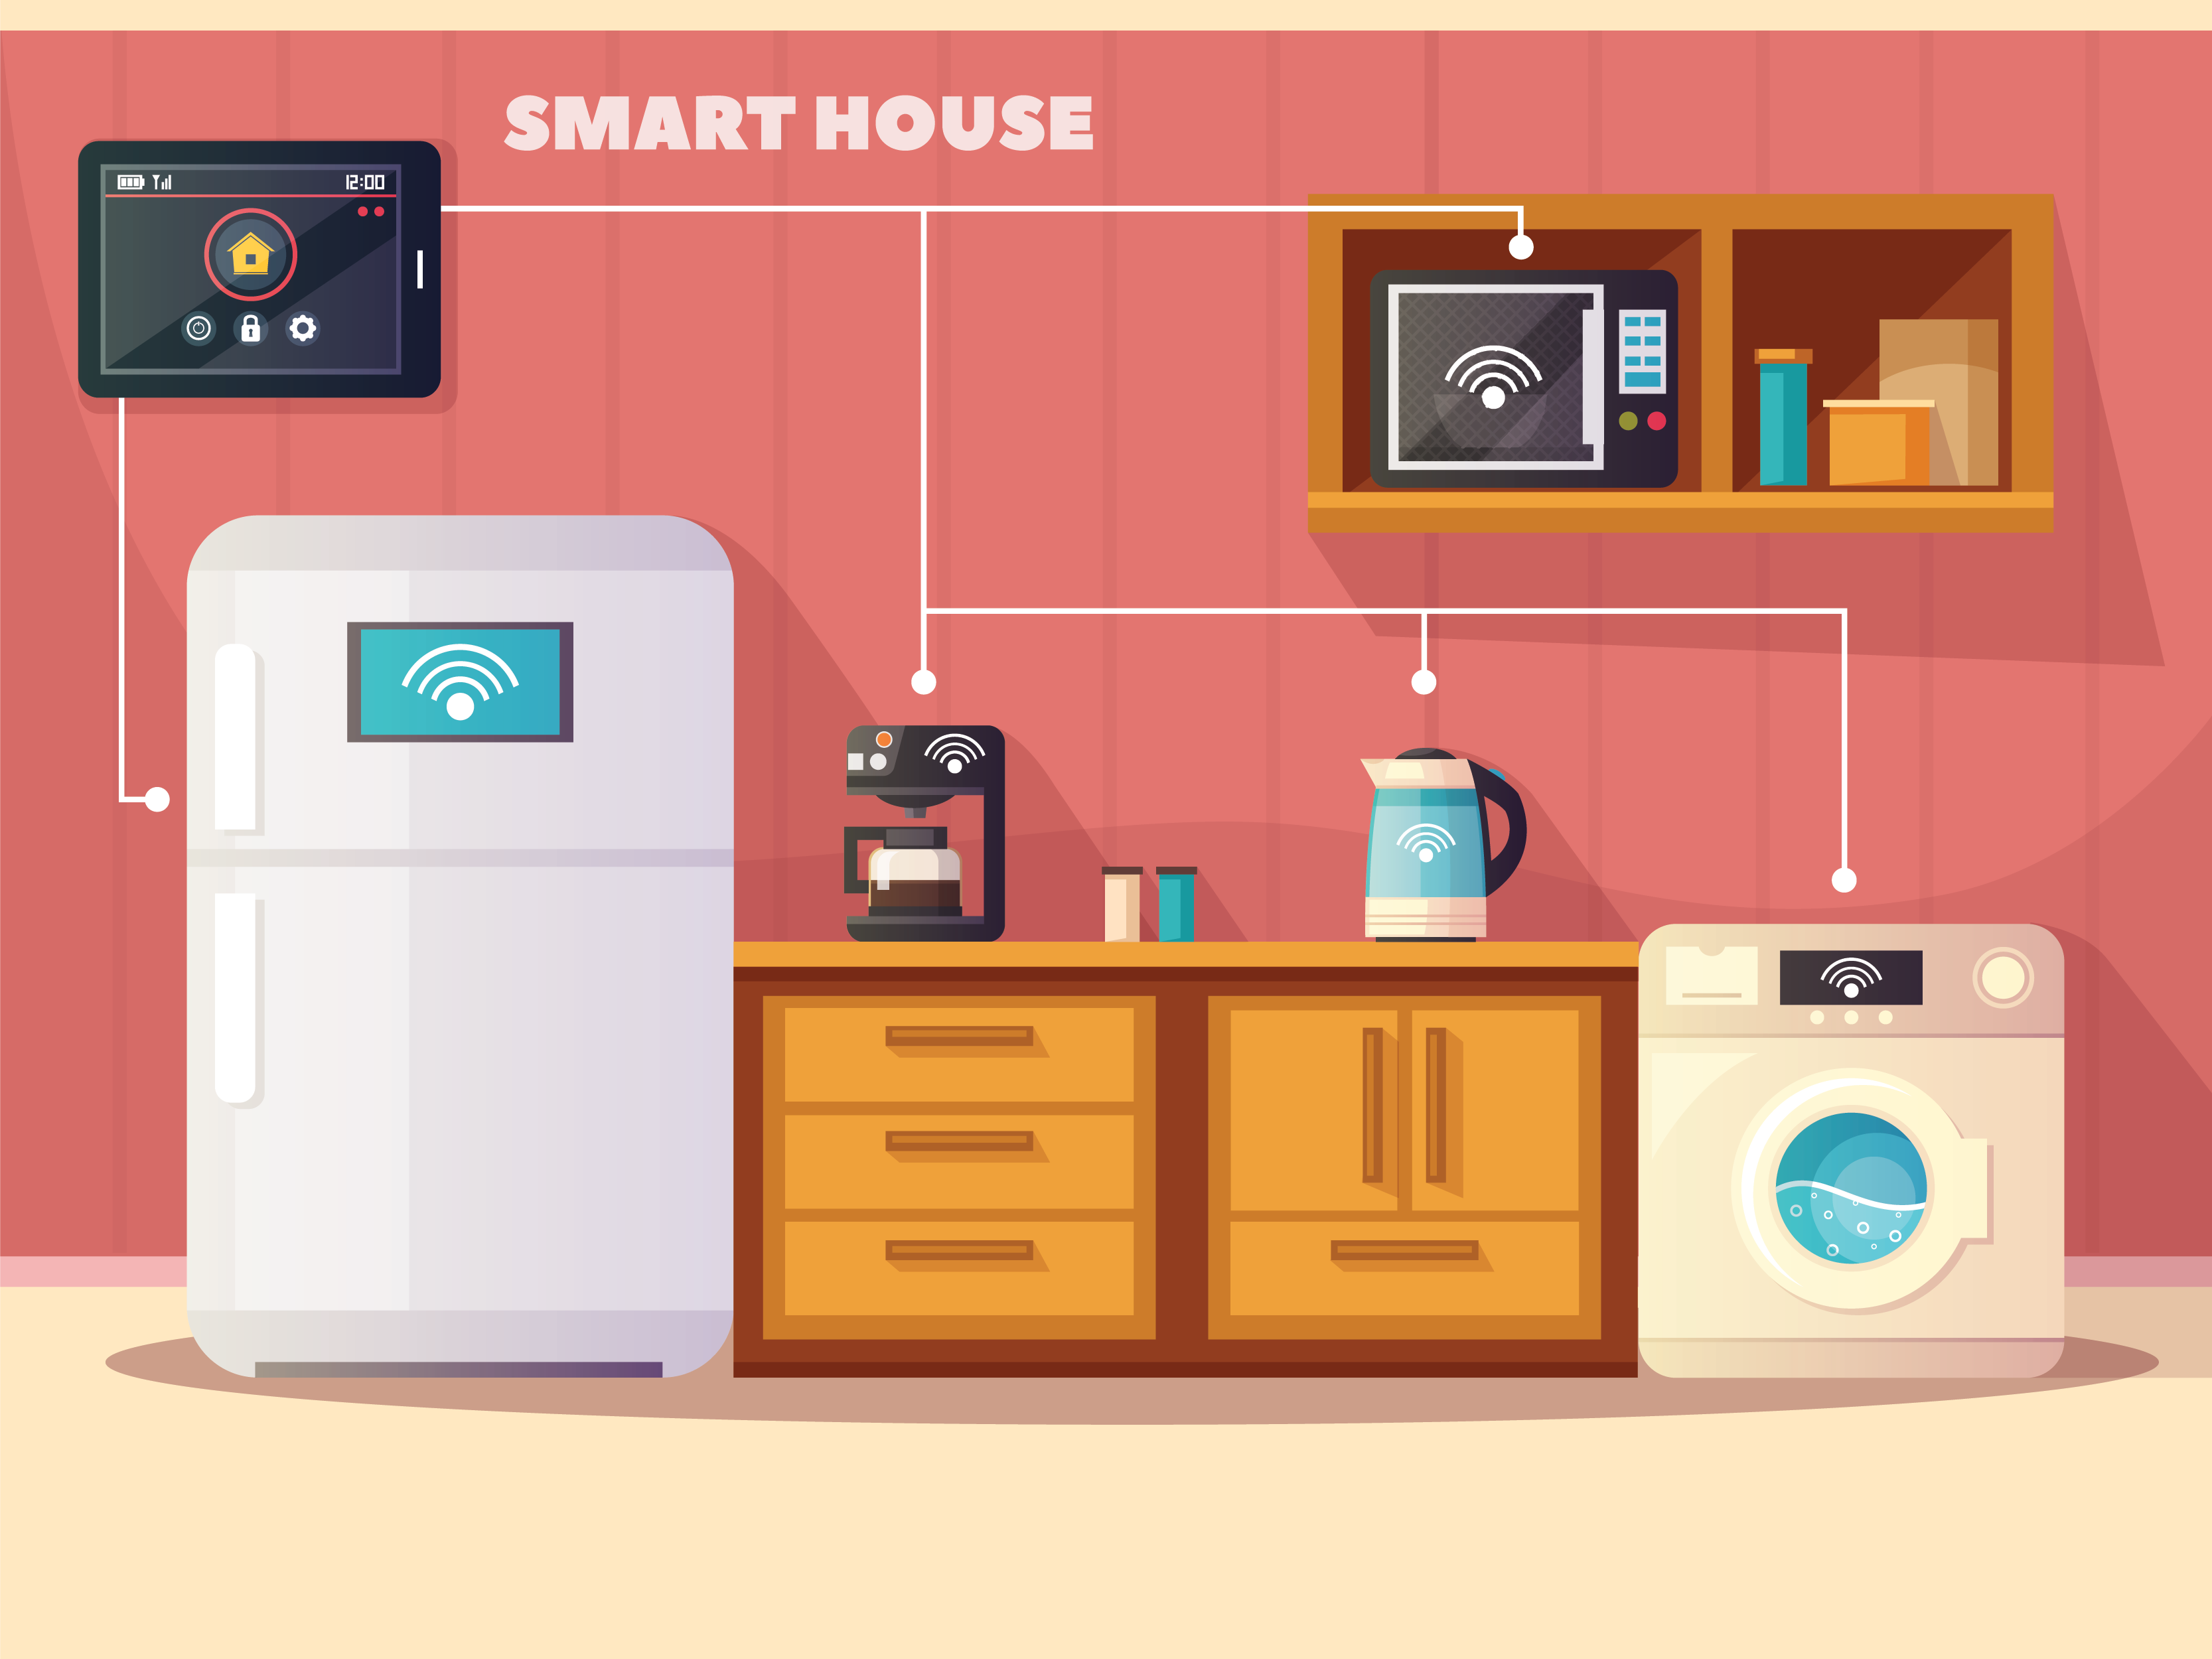 Smart appliances